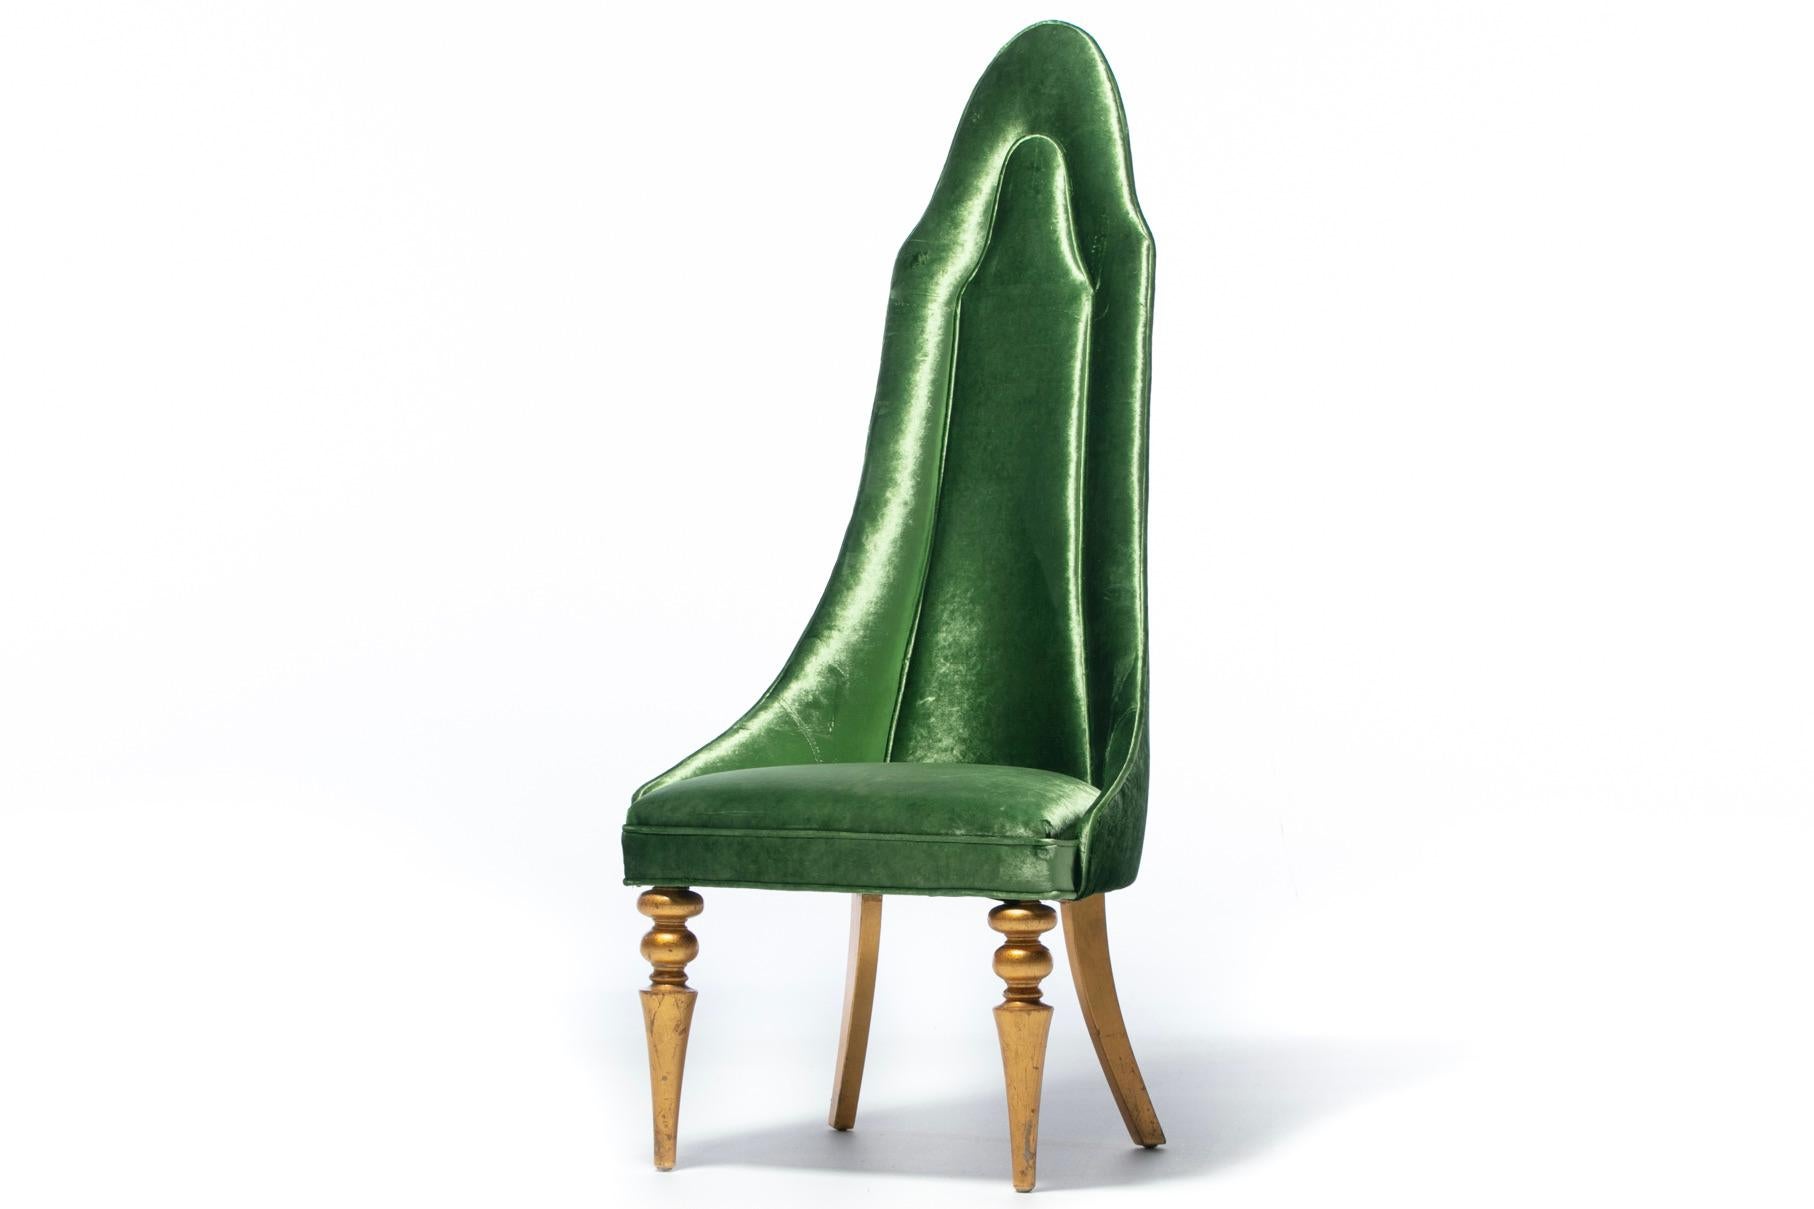 Ciao bella Chaise à rouge à lèvres de style Hollywood Regency, tapissée de velours vert, avec pieds en fuseau d'origine en feuille d'or. Chaise d'appoint. Chaise de bureau. Chaise d'appoint. Le dossier haut et spectaculaire est canalisé, incurvé et